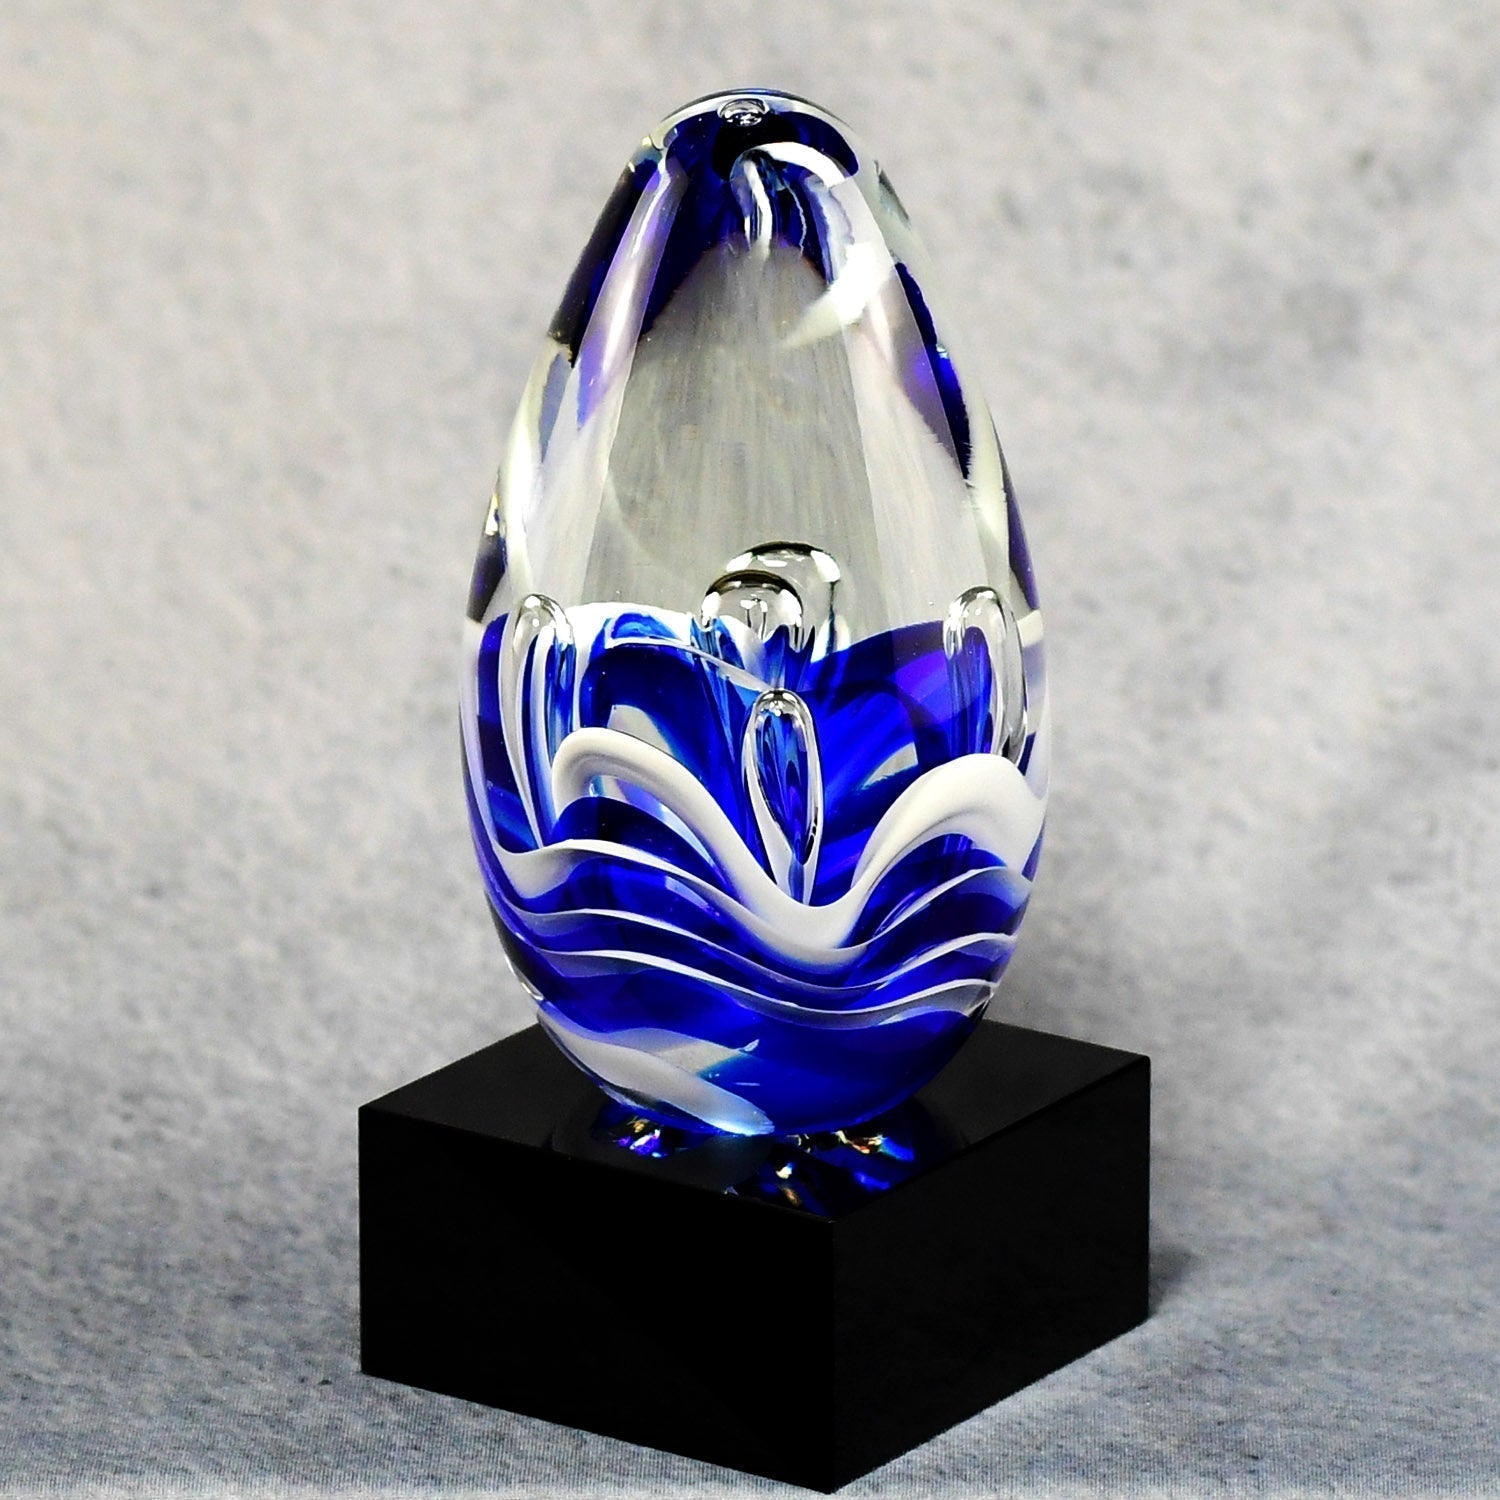 Blue And White Art Glass Egg | Alliance Awards LLC.